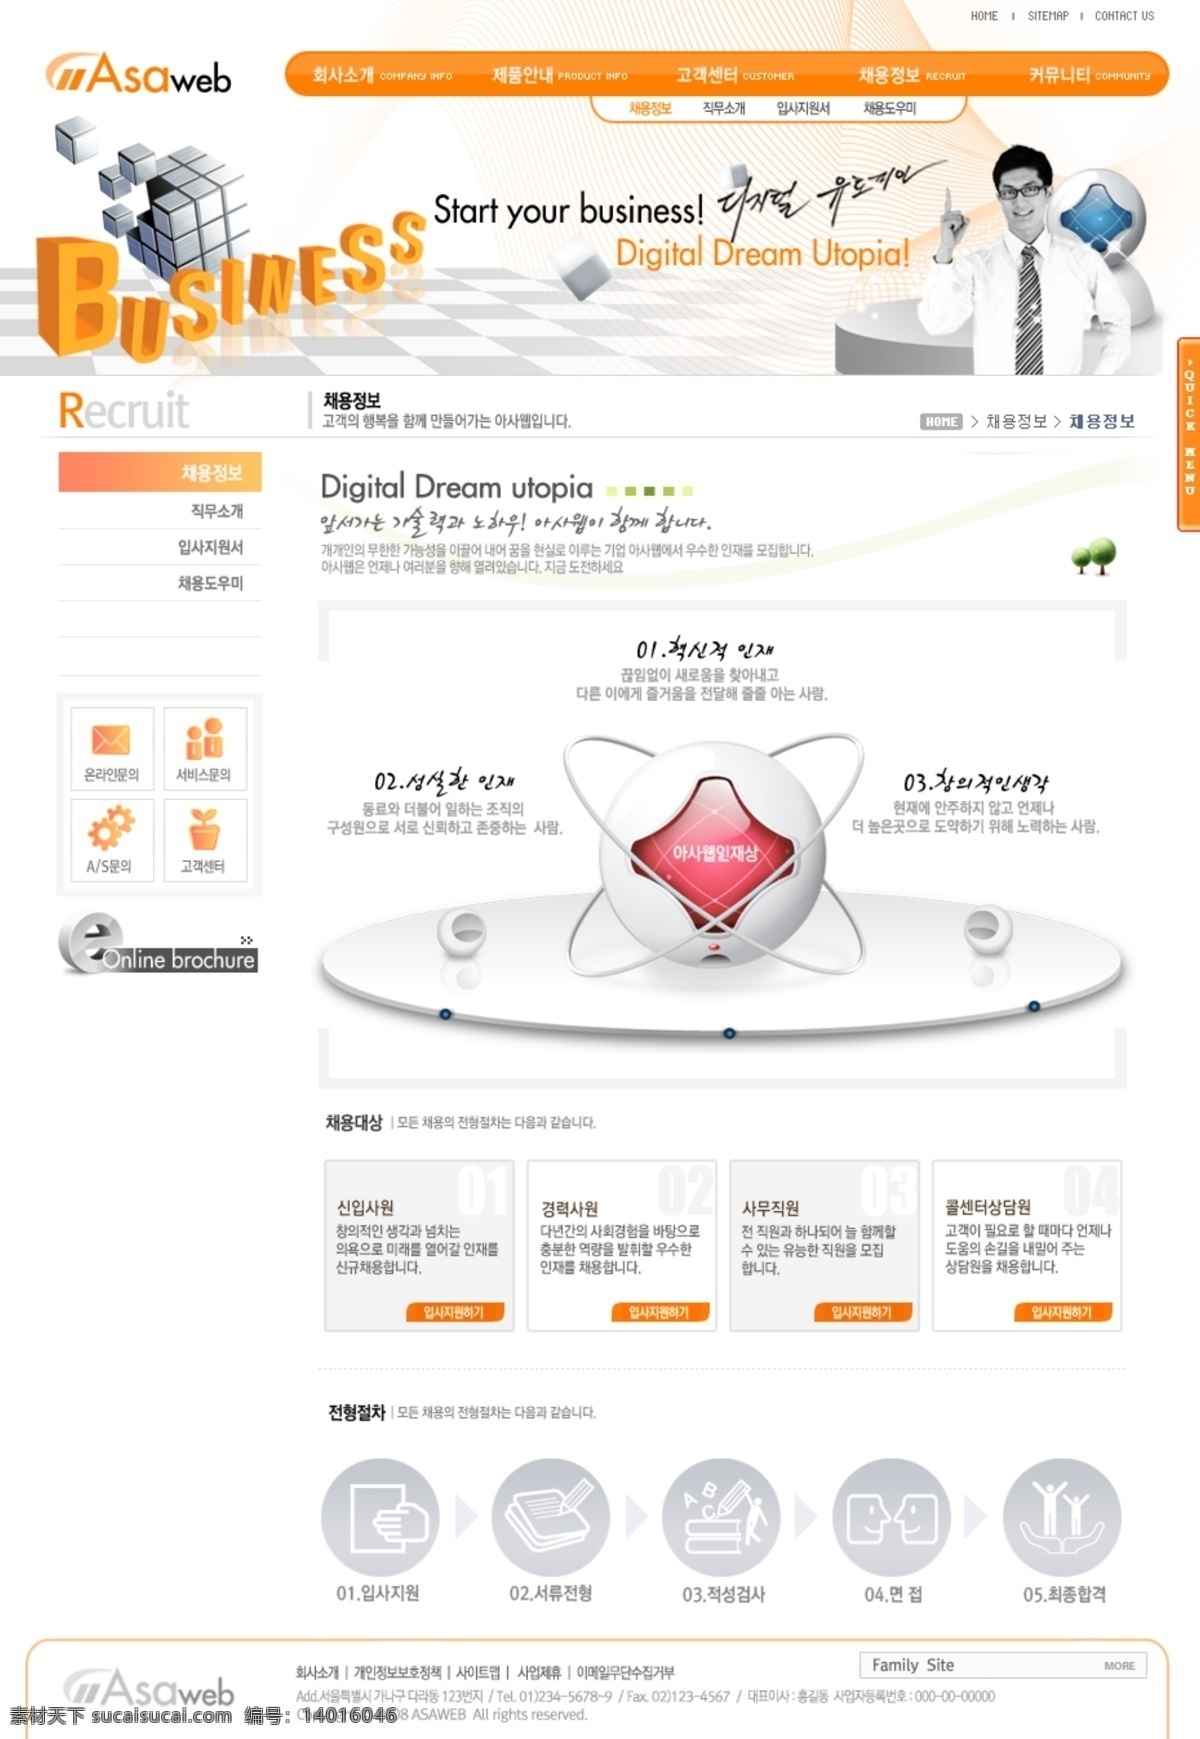 韩国 网站 韩文 模板 国外网站 设计素材 设计网站模板 网页模板 公司类模板 web 界面设计 韩文模板 网页素材 其他网页素材